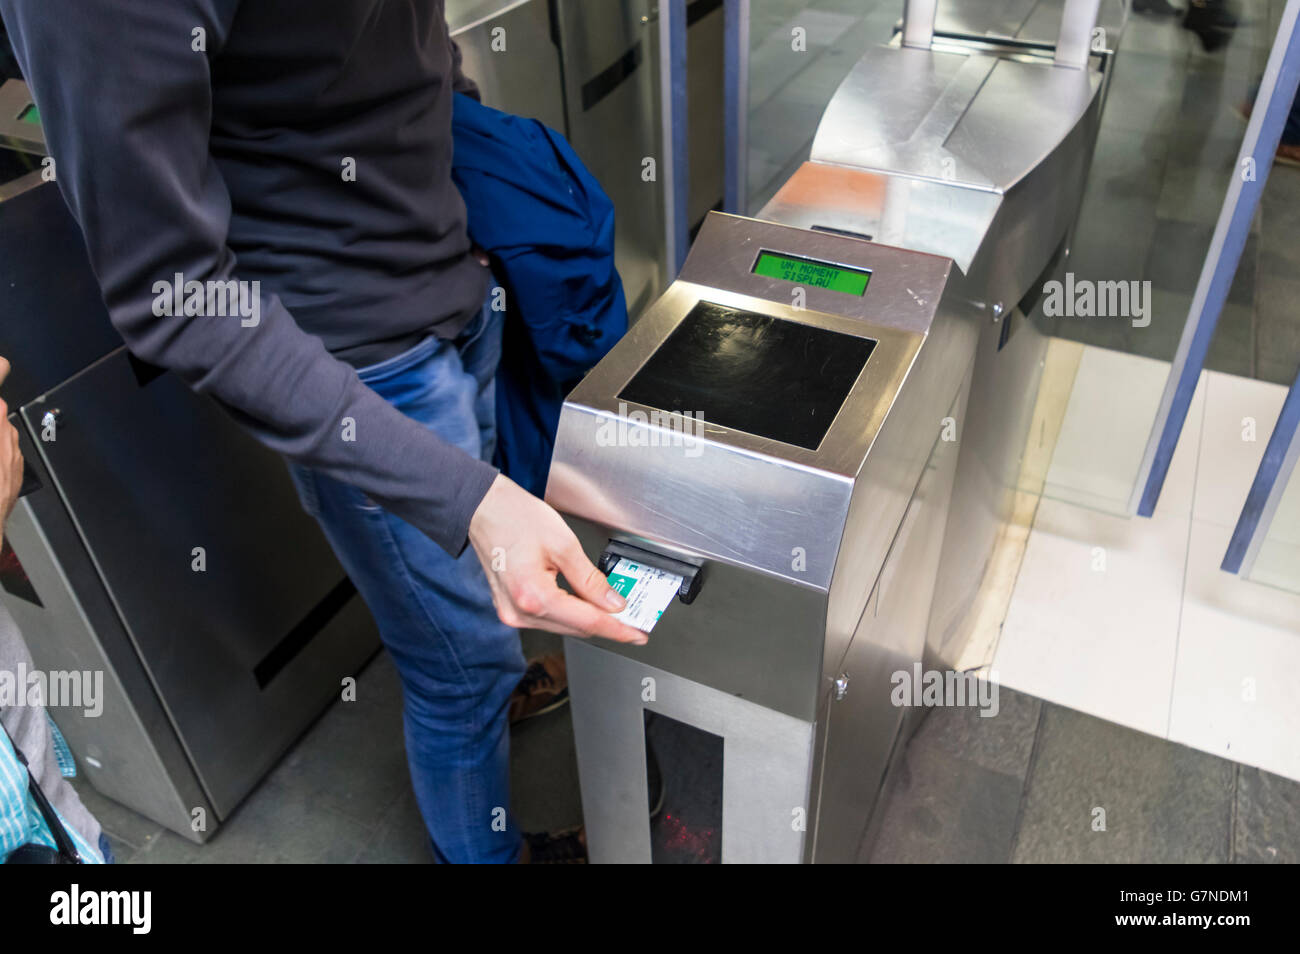 L'homme l'insertion d'un billet dans un billet contrôle de machine pour obtenir l'accès au système de métro de Barcelone. Banque D'Images